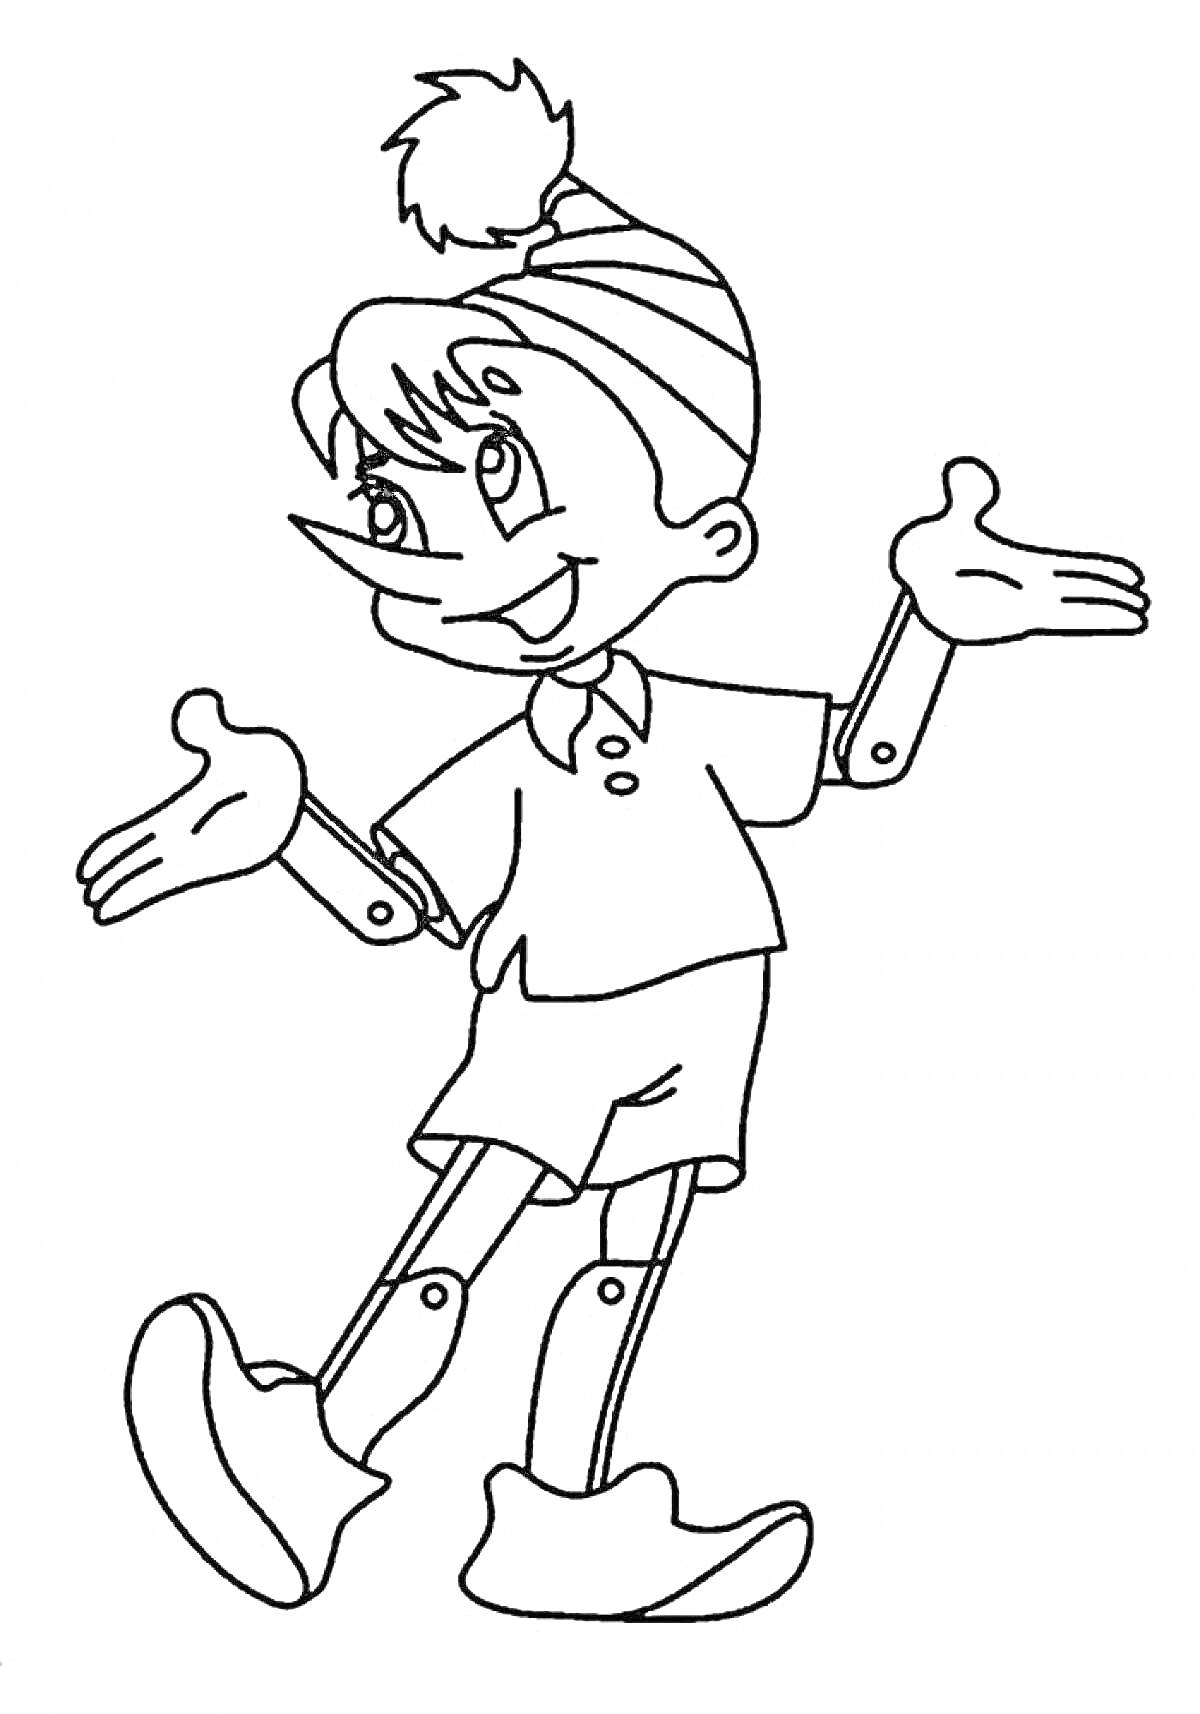 Раскраска Мальвина с короткими волосами, в шортах и майке с воротничком, в полосатой шапке с помпоном, с вытянутыми руками в стороны, на согнутых ногах